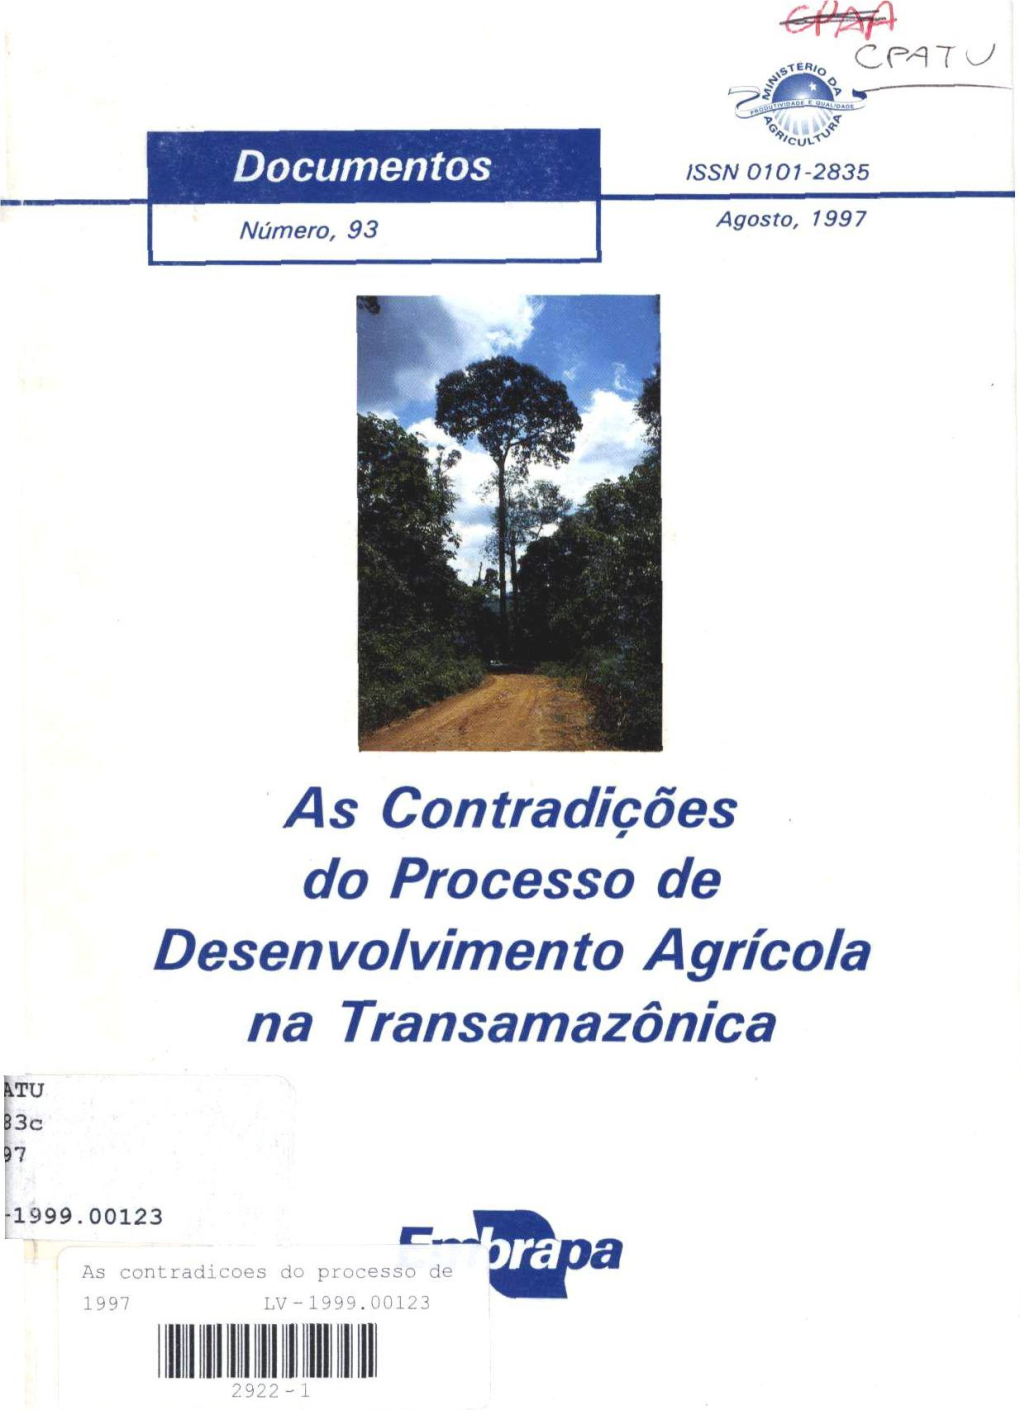 As Contradições Do Processo De Desen Volvimen to Agrícola Na Transamazônica